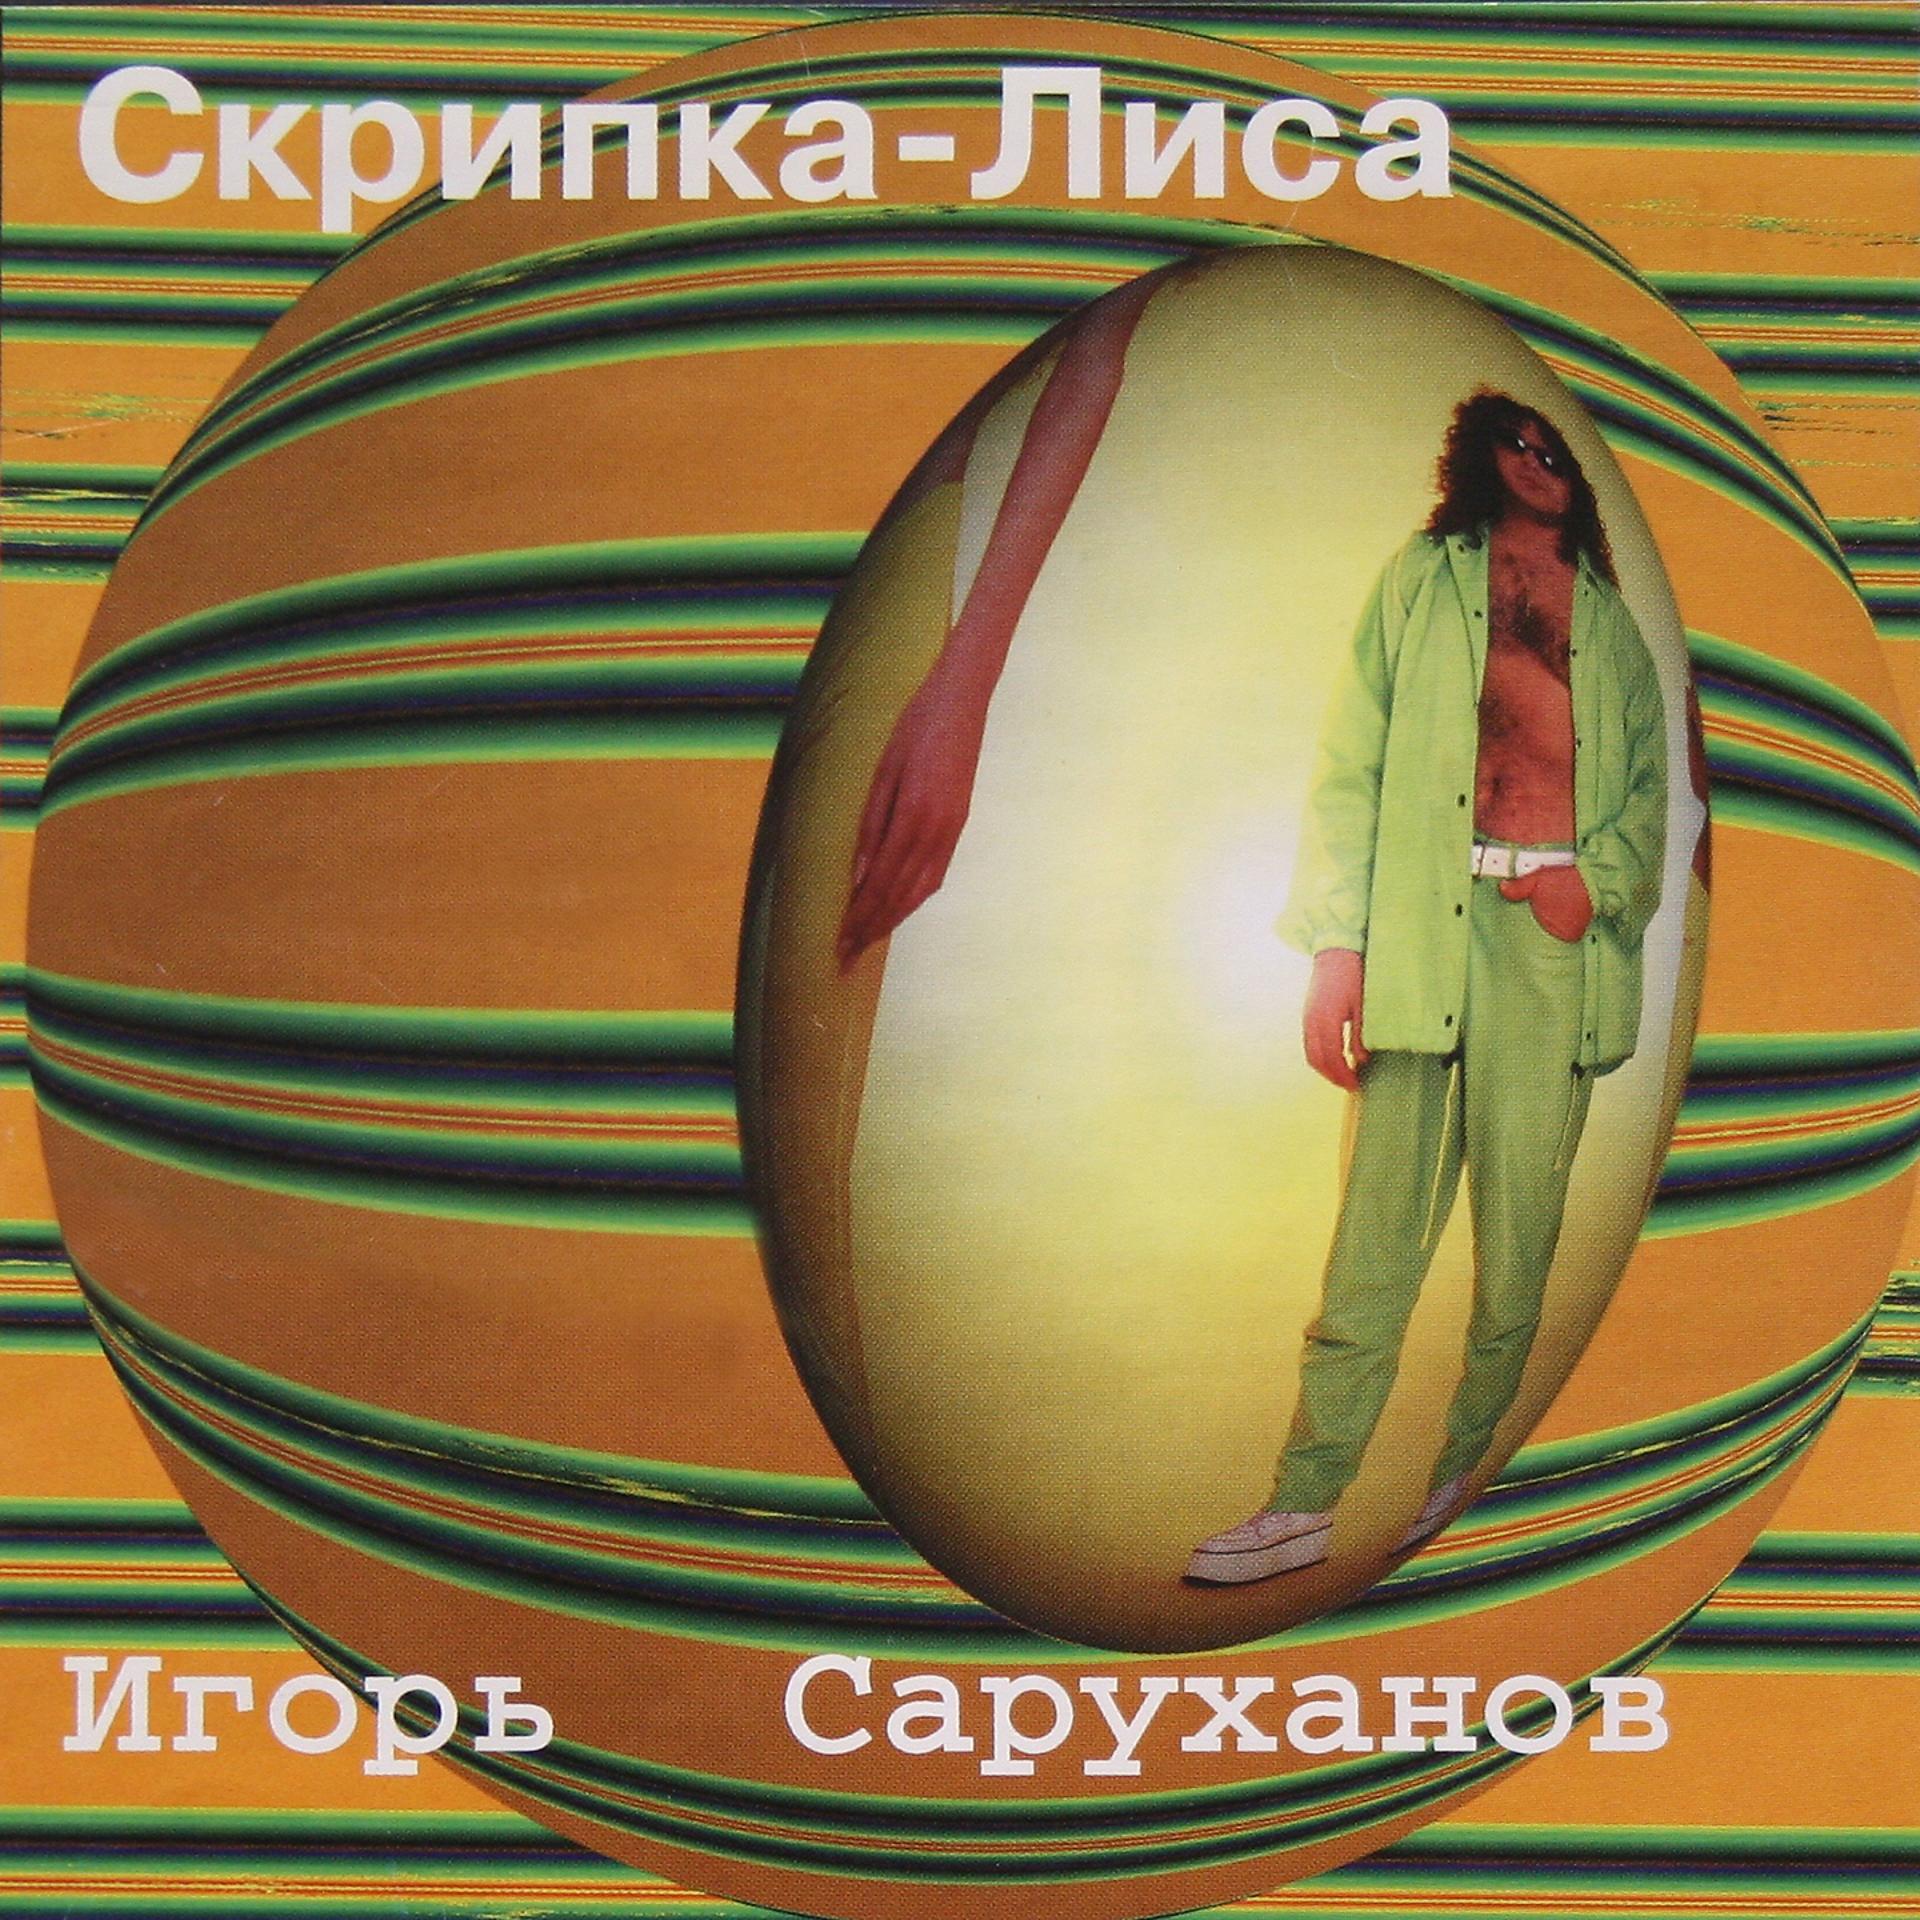 Скрип колеса или скрипка лиса как правильно. Скрипка лиса Игоря Саруханова. 1997 - Скрипка-лиса.